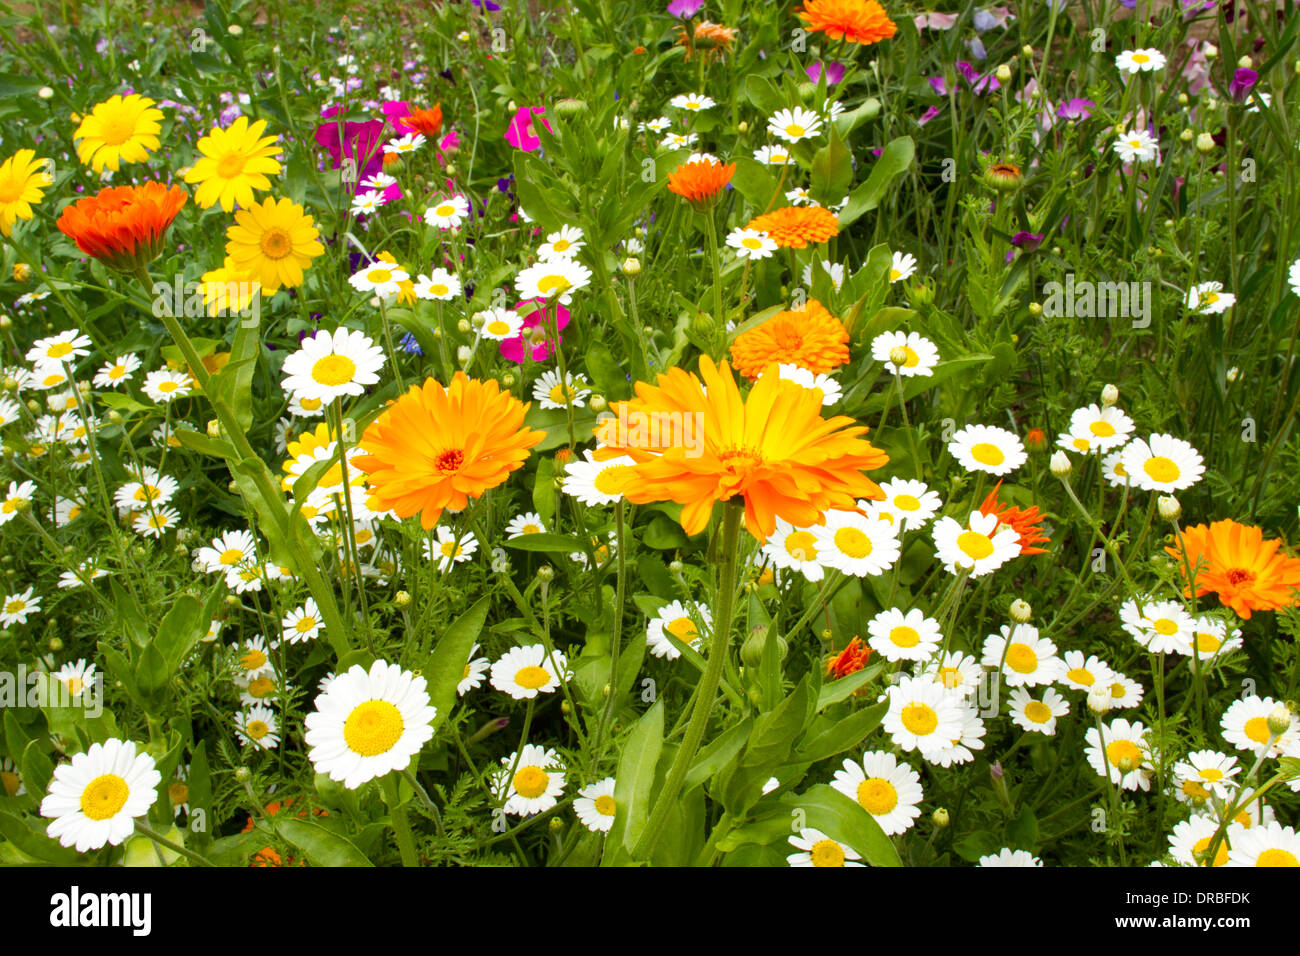 Gemischte jährliche Blumen (Anthemis, Tagetes, Ringelblume), Blüte in einem Garten Grenze. Powys, Wales. Juli. Stockfoto